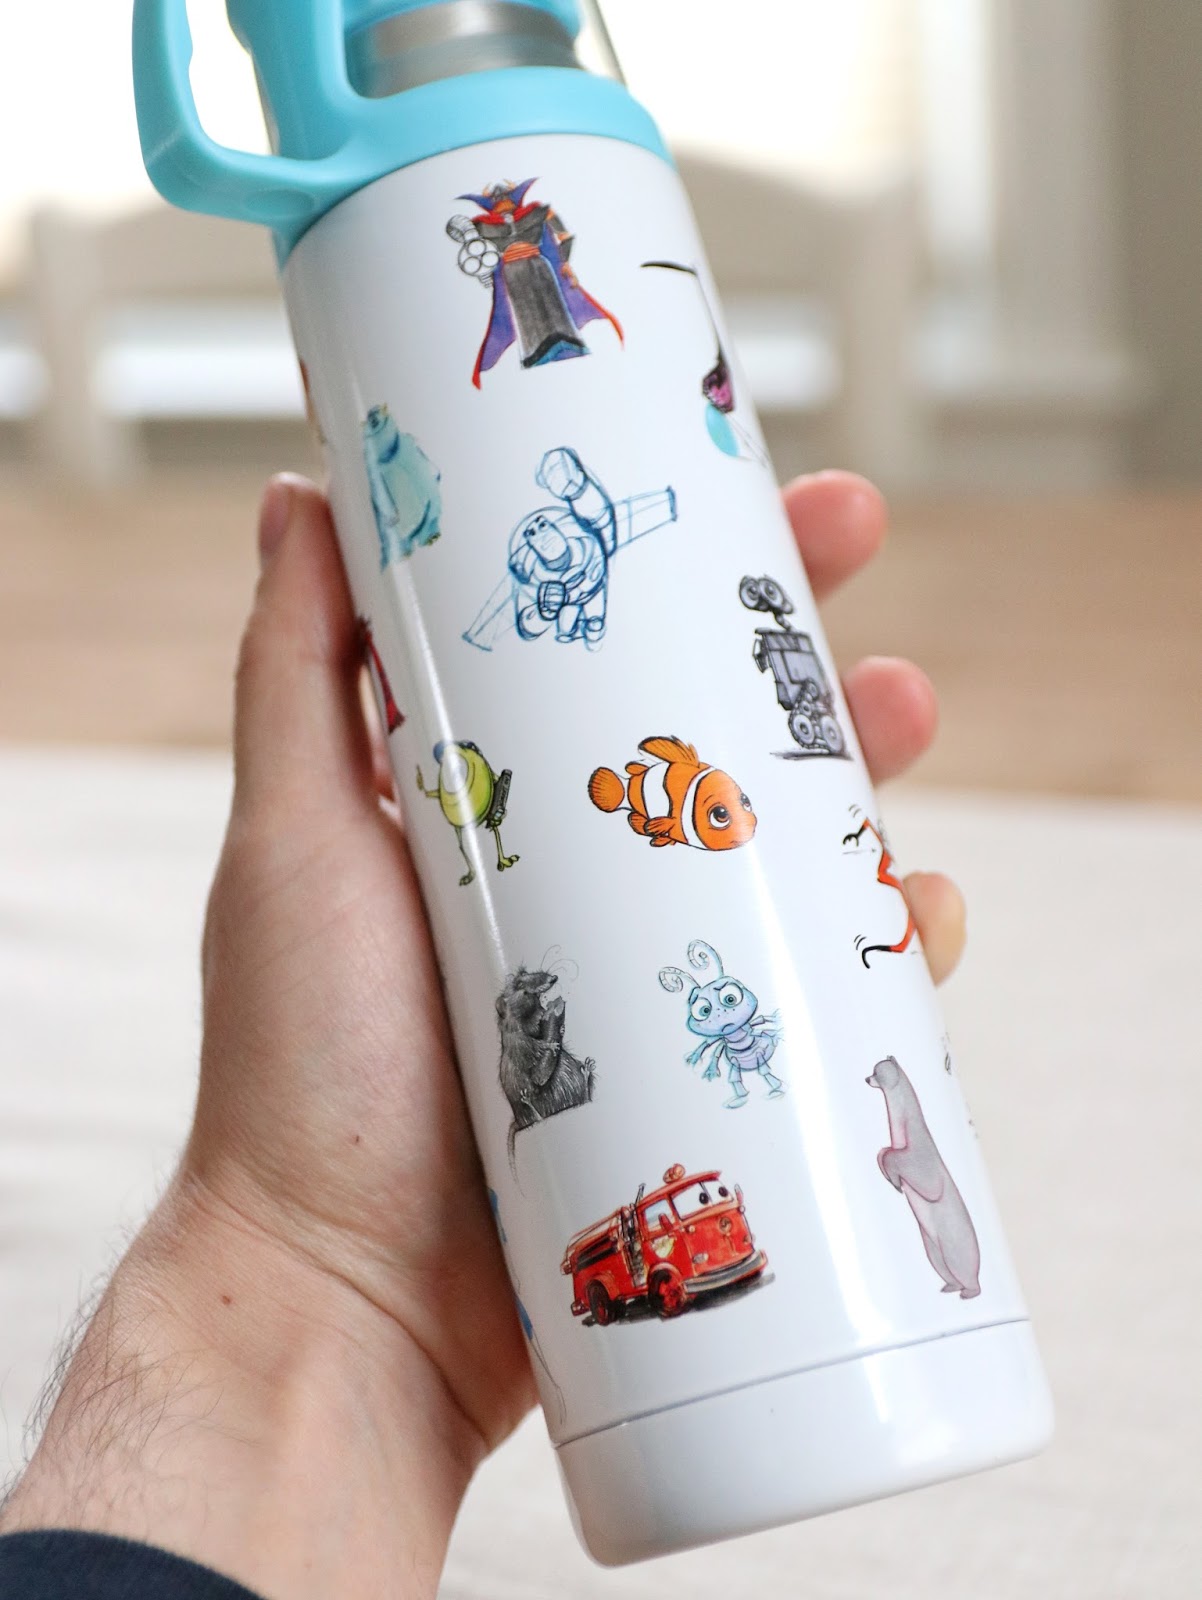 d23 expo pixar concept sketch art water bottle 